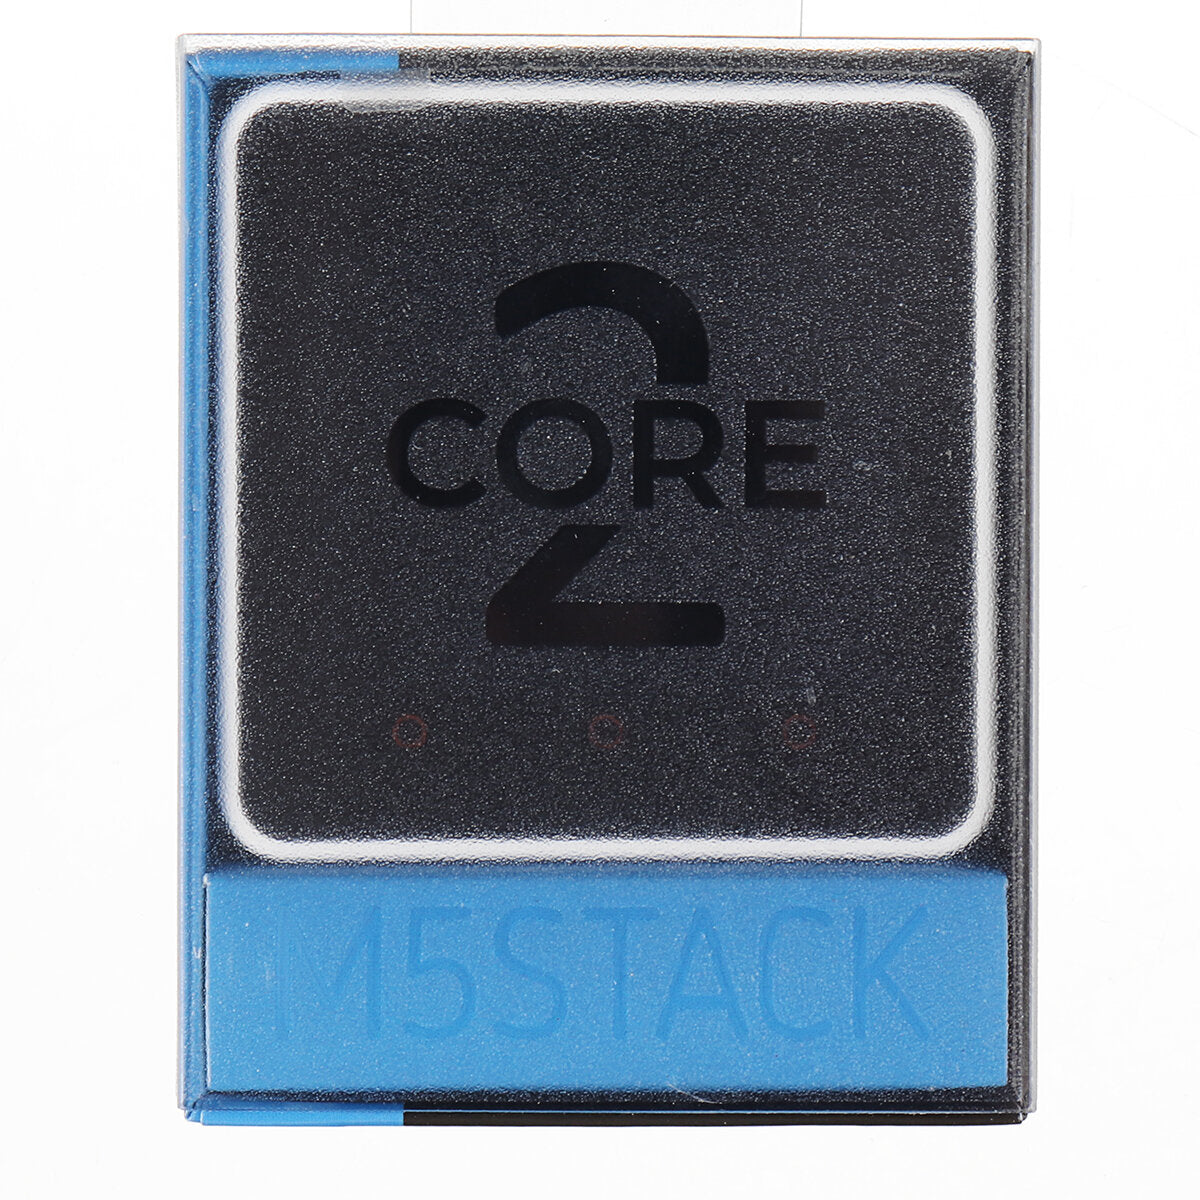 m5stack core2 esp32 met touch screen development board kit wifi bluetooth grafische programmering wifi ble iot m5stack voor arduino - producten die werken met officiële arduino-boards